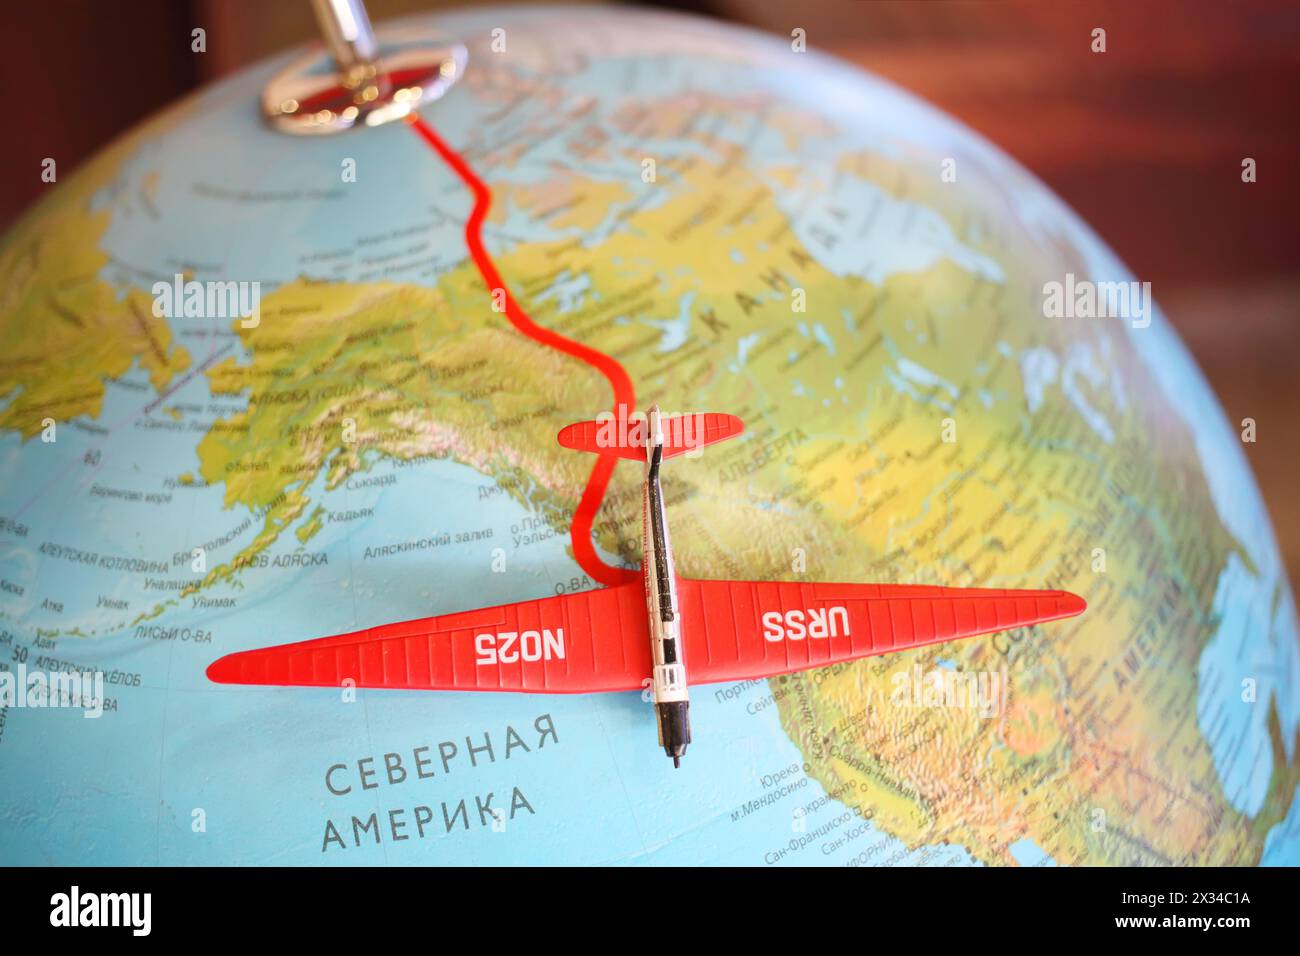 MOSCA, RUSSIA - 21 giugno 2014: Itinerario Stalin. Volo non-stop: Mosca - Udd Island - volo non-stop di aviatori sovietici attraverso il Polo Nord. Foto Stock